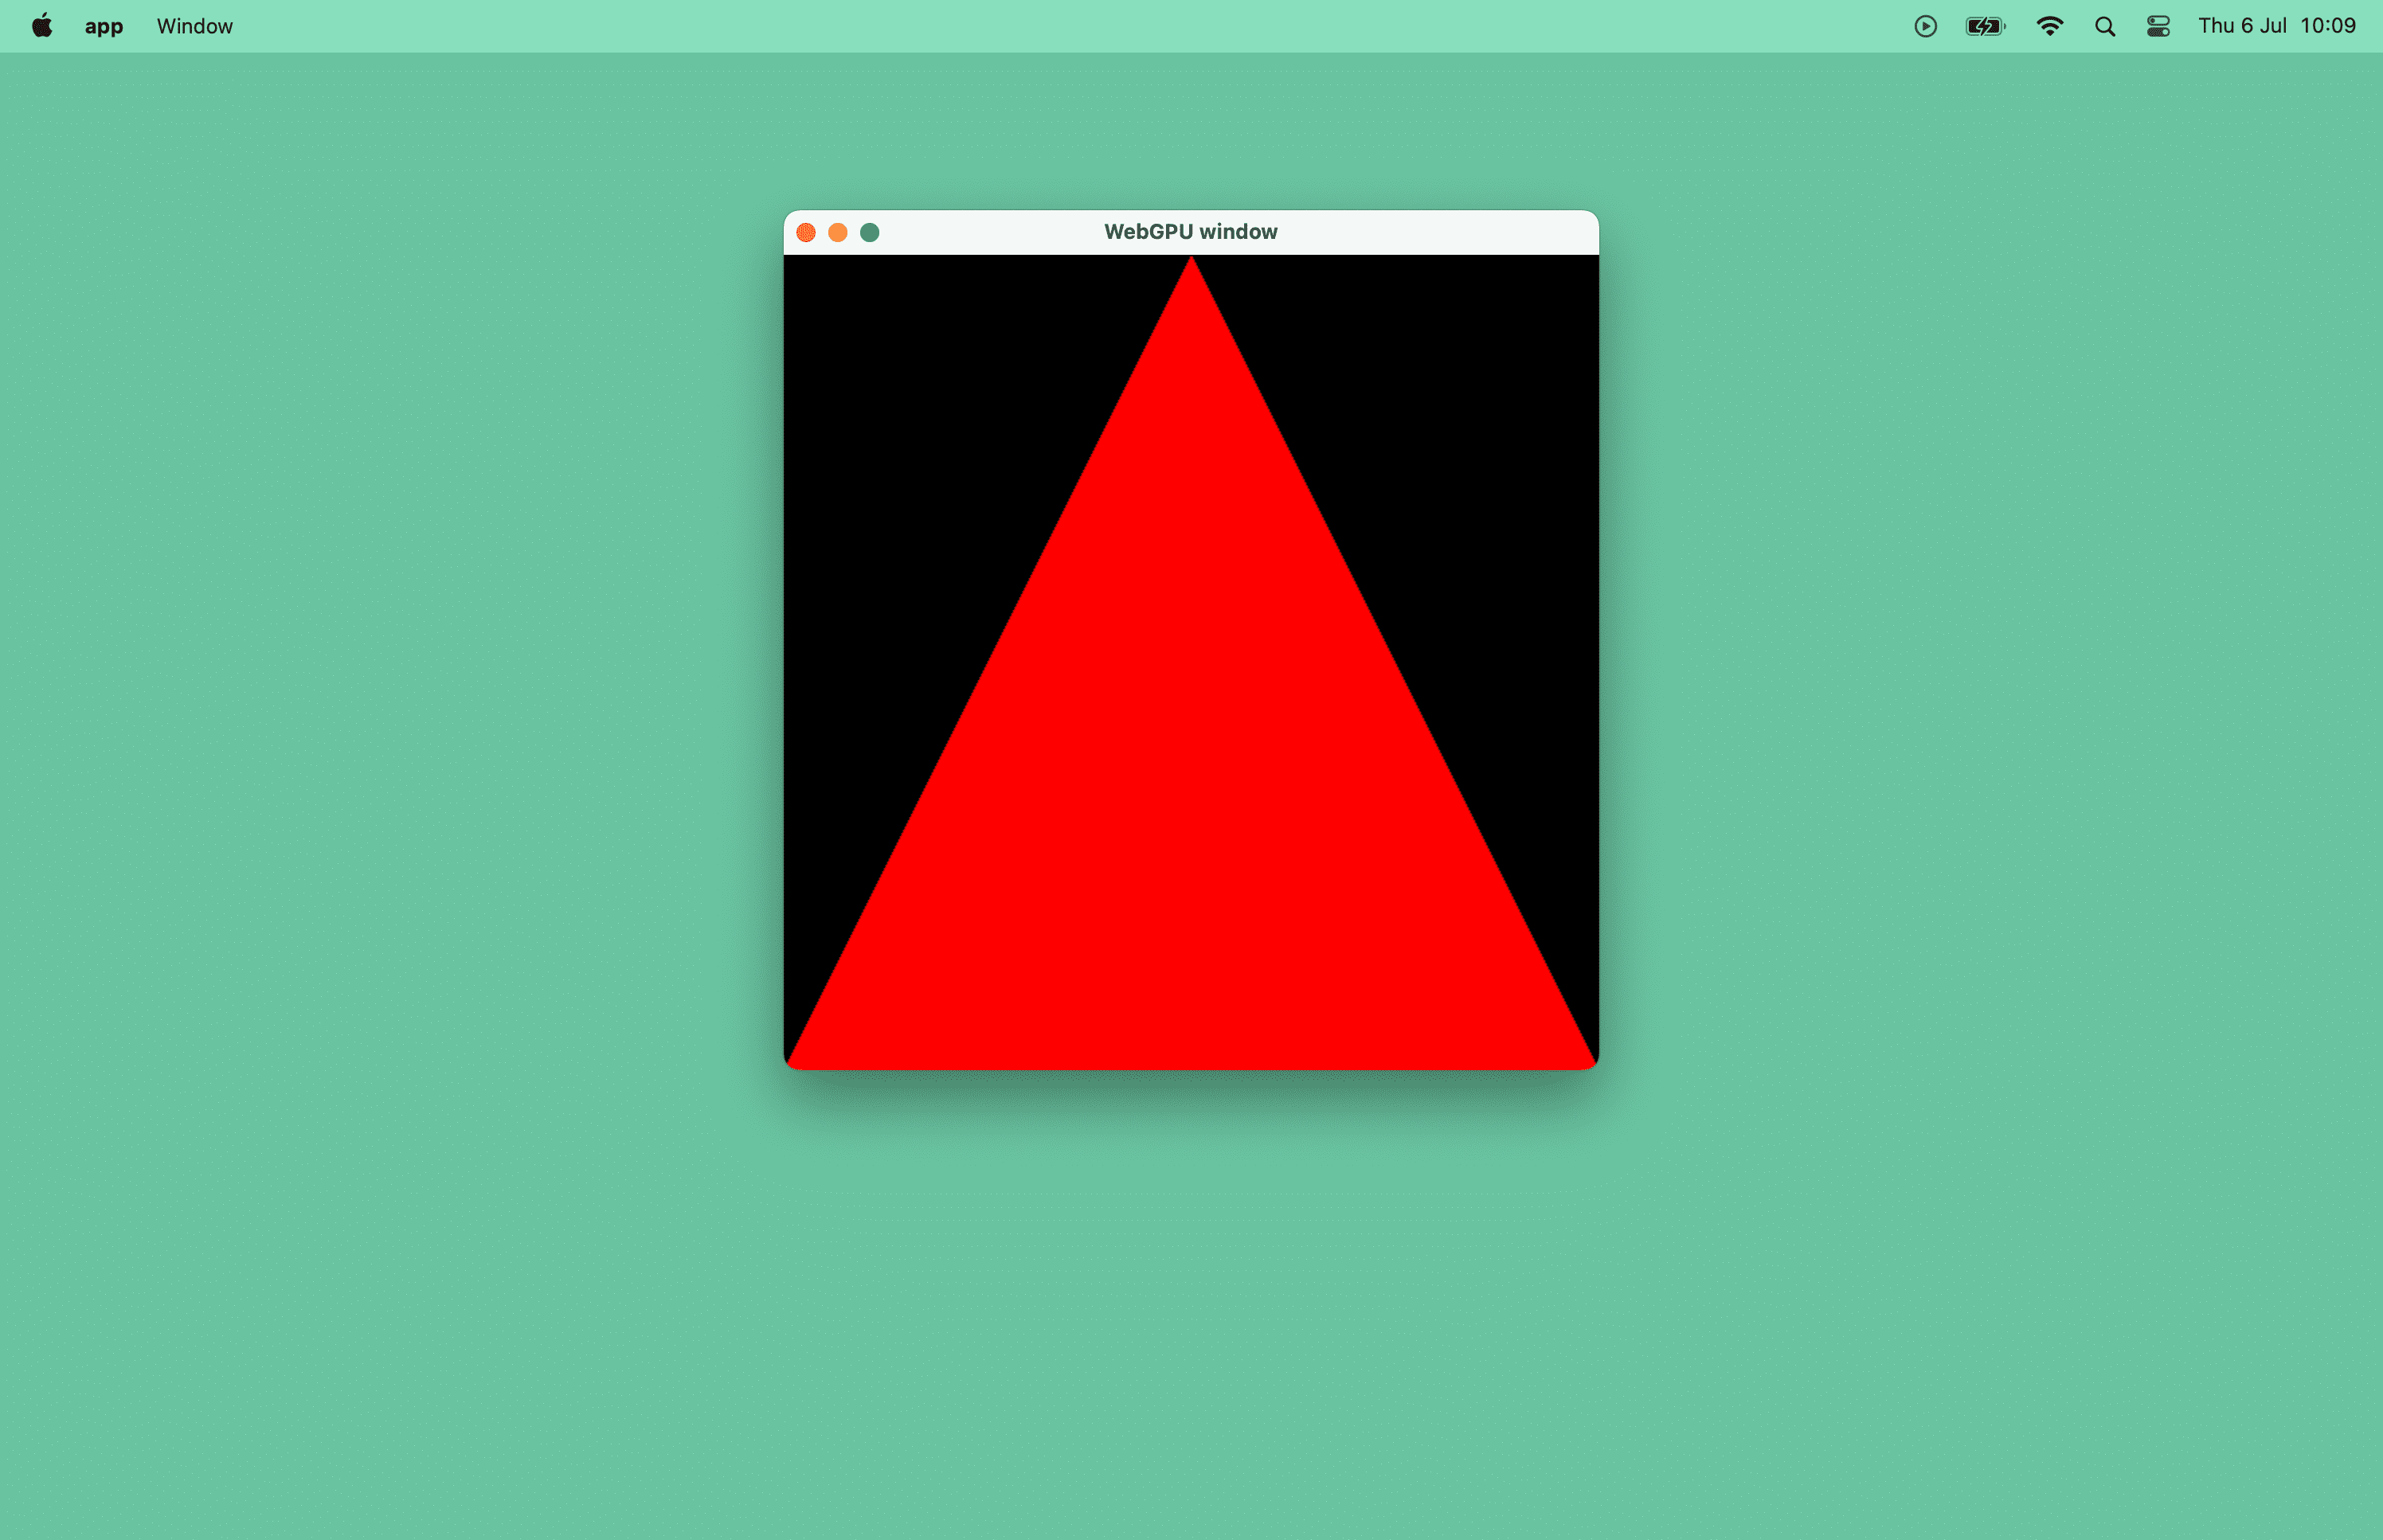 macOS ウィンドウの赤い三角形のスクリーンショット。